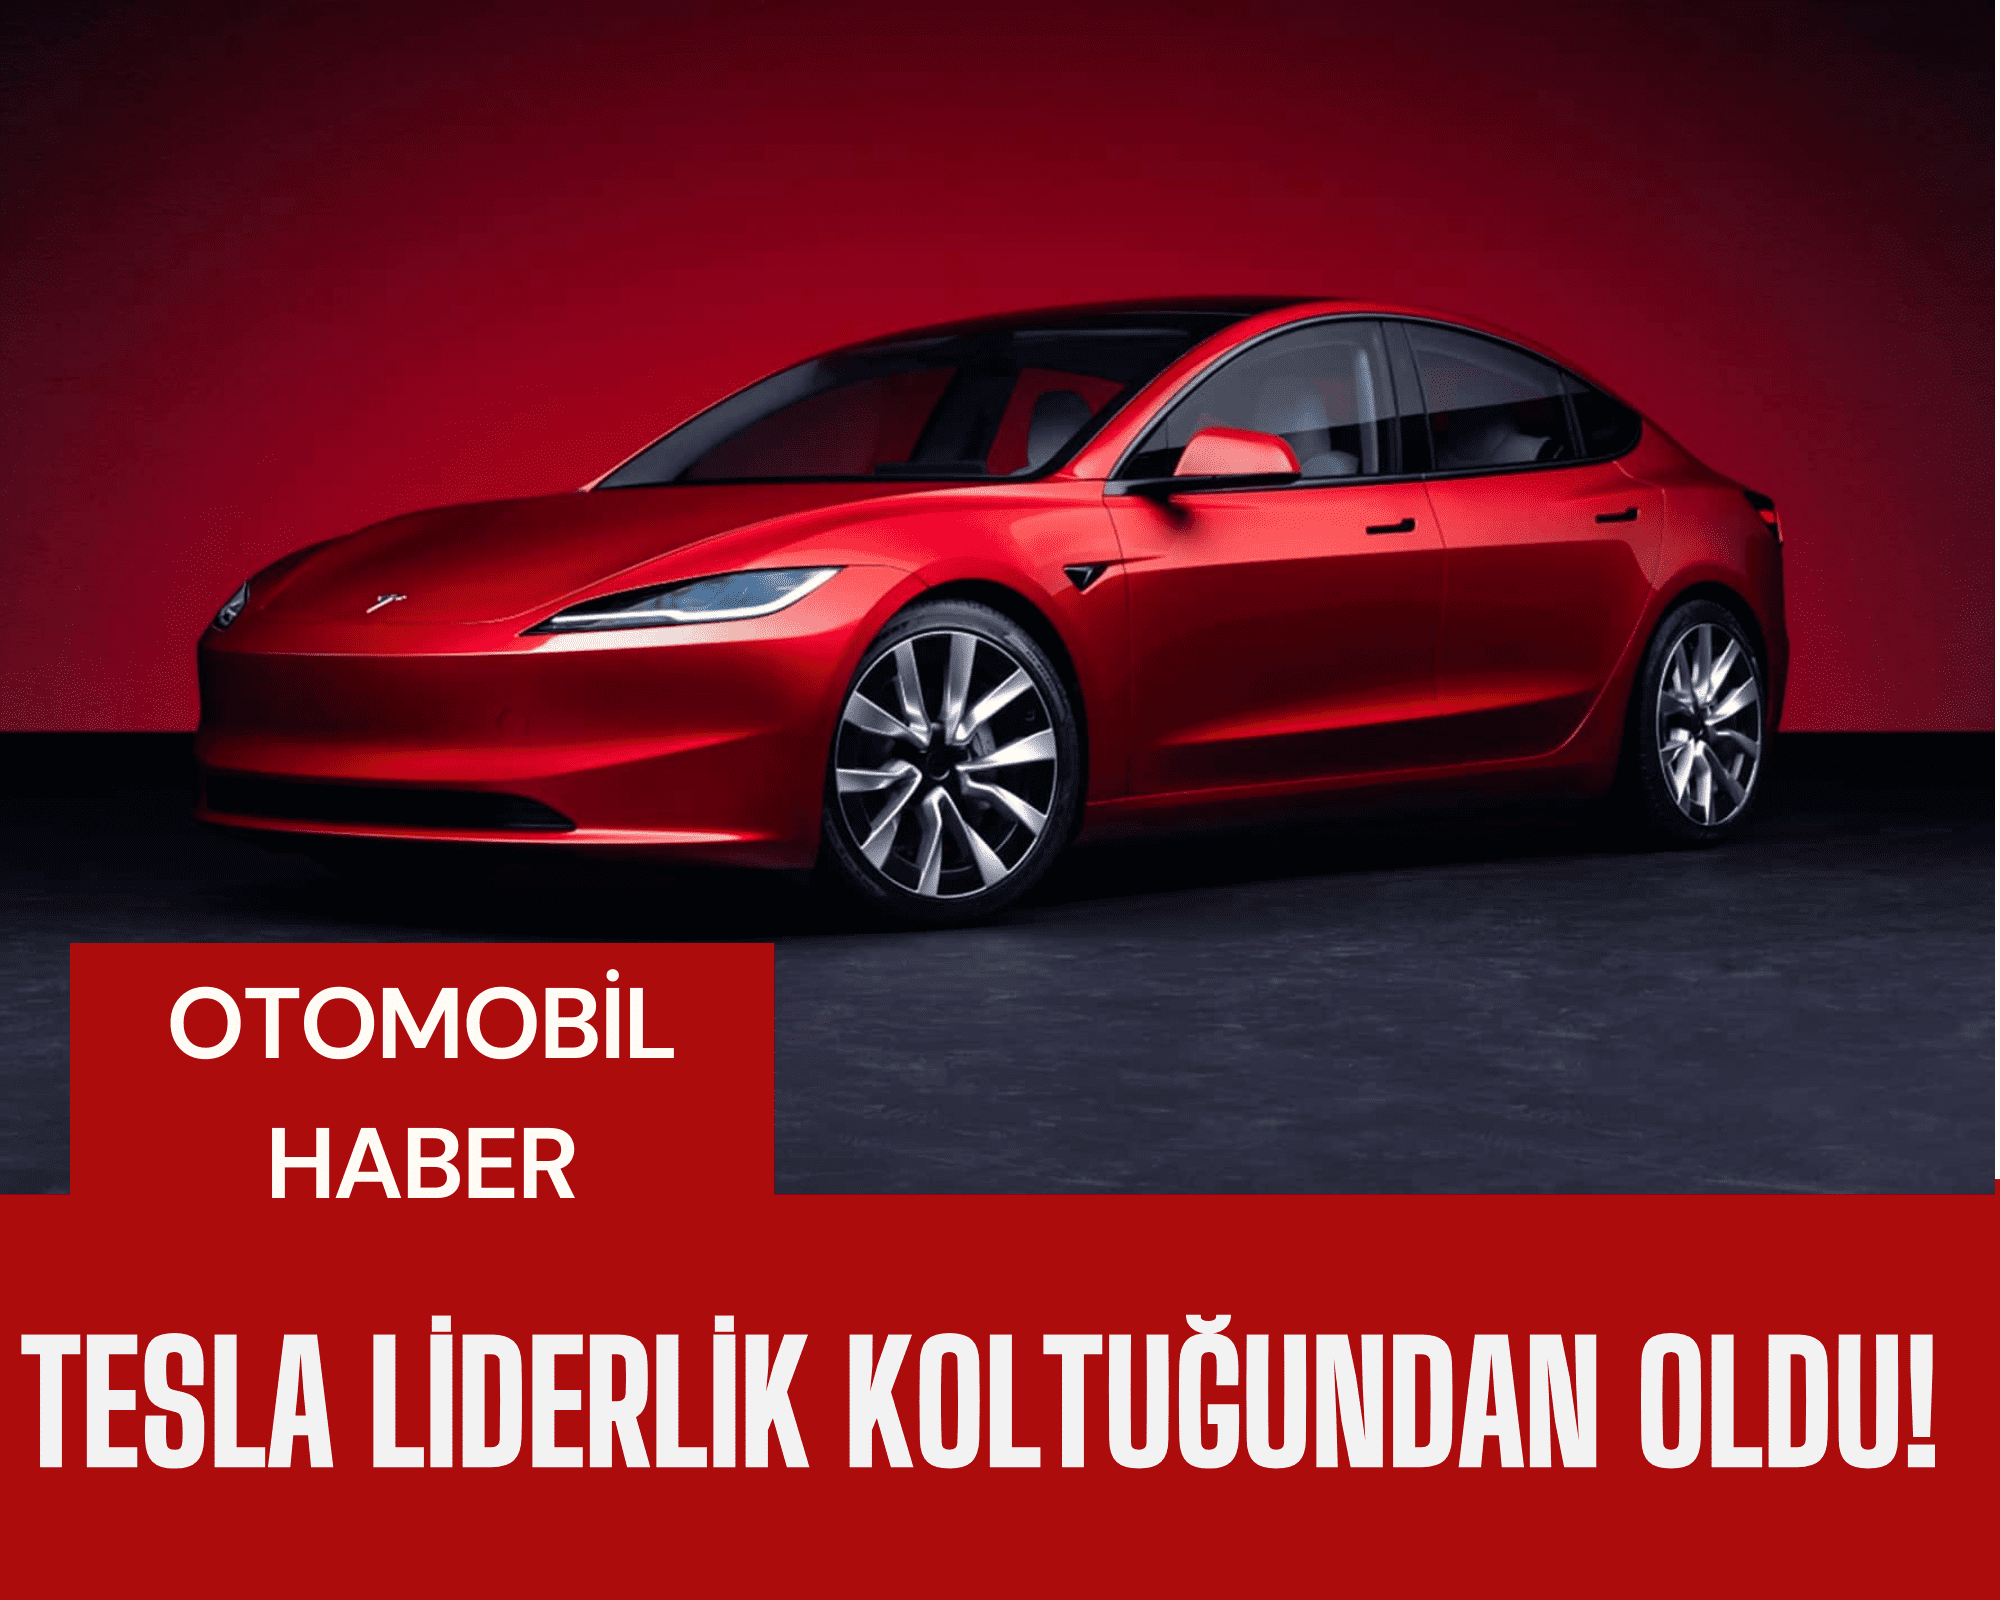 BYD'nin elektrikli otomobili, Tesla modellerini geride bırakırken